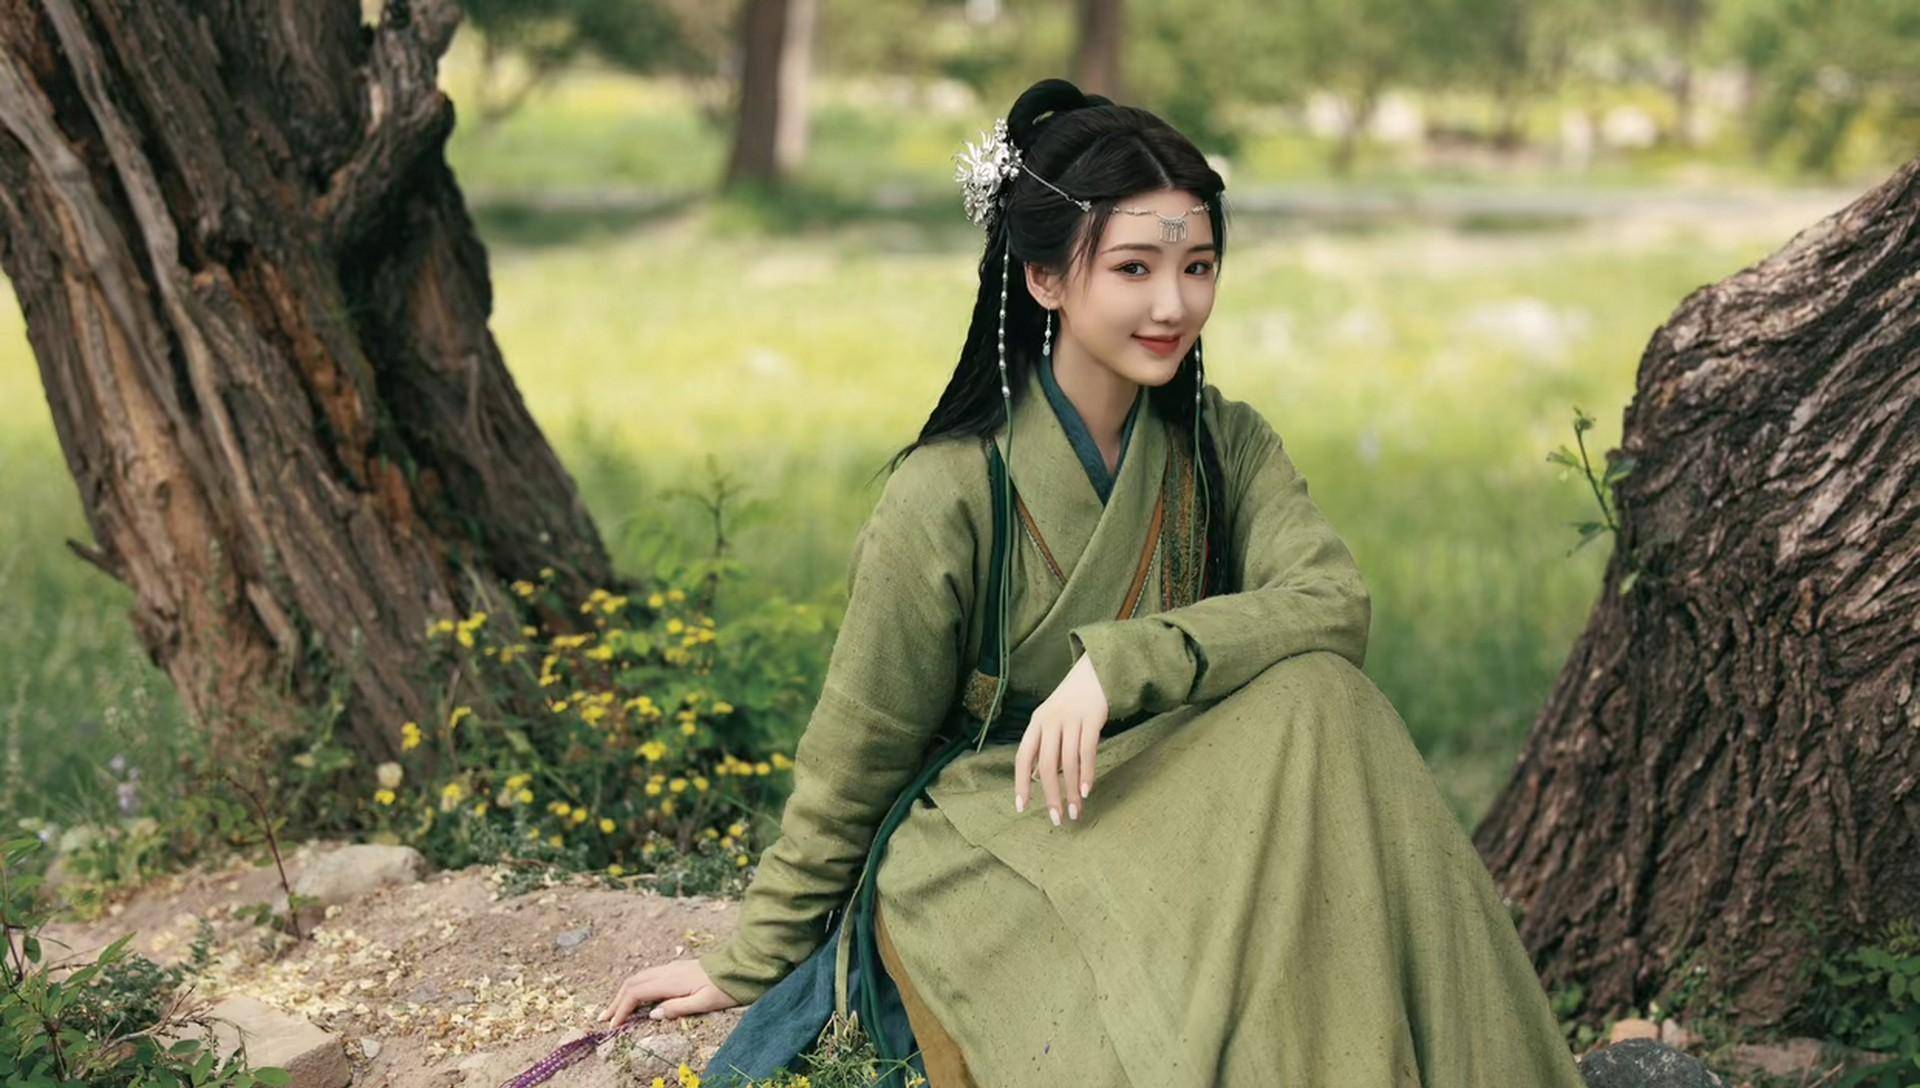 毛晓彤的眼神很美,在《庆余年》中饰演北齐大公主